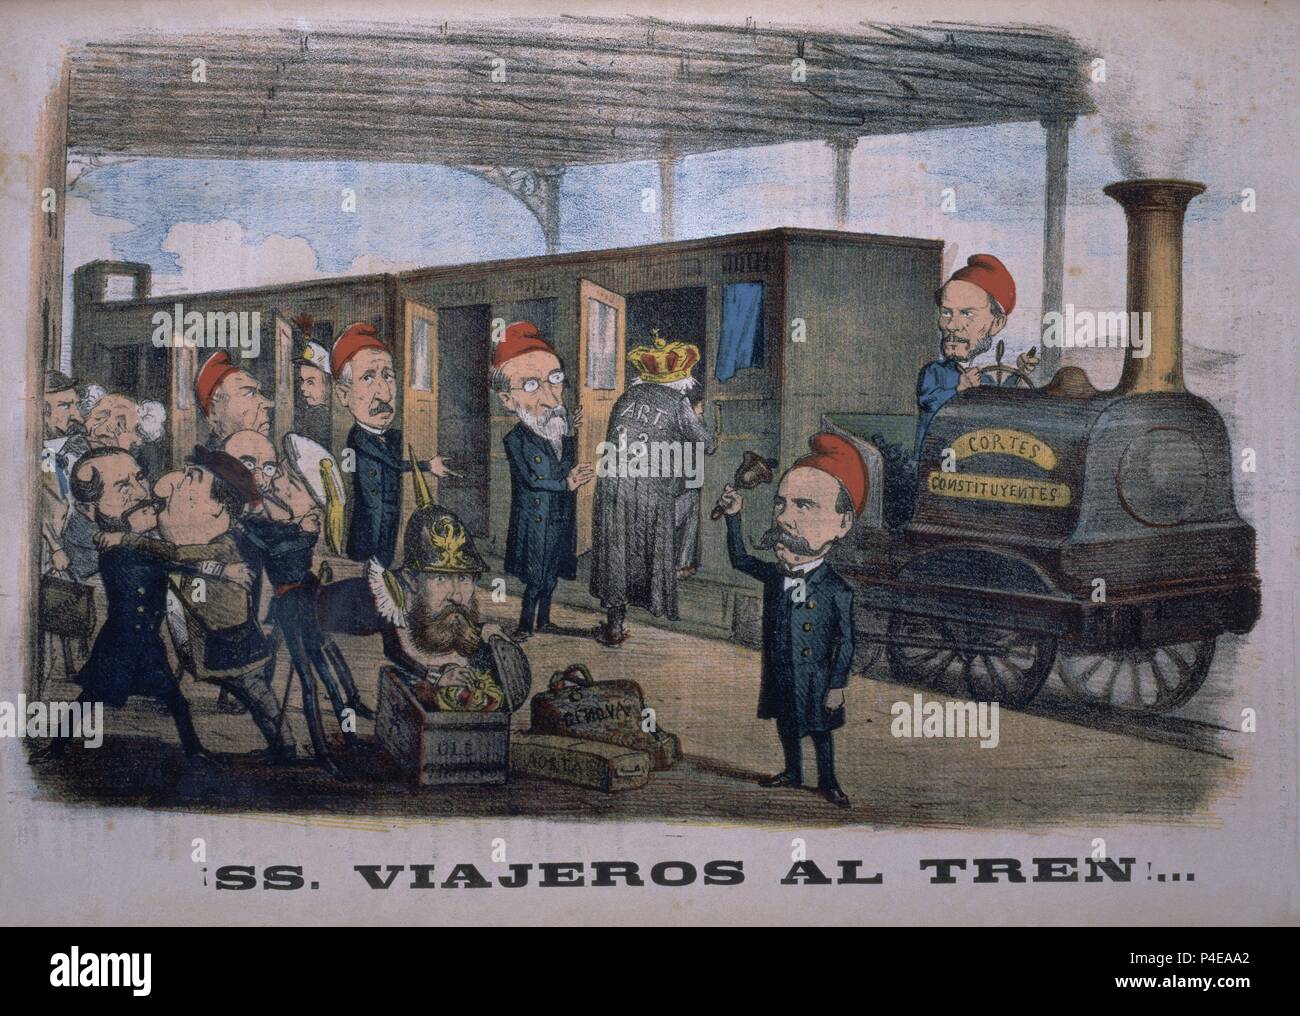 SATIRA POLITICA DE 1870: LAS CORTES CONSTITUYENTES VISTAS POR SEMANARIO LA FLACA. Stock Photo